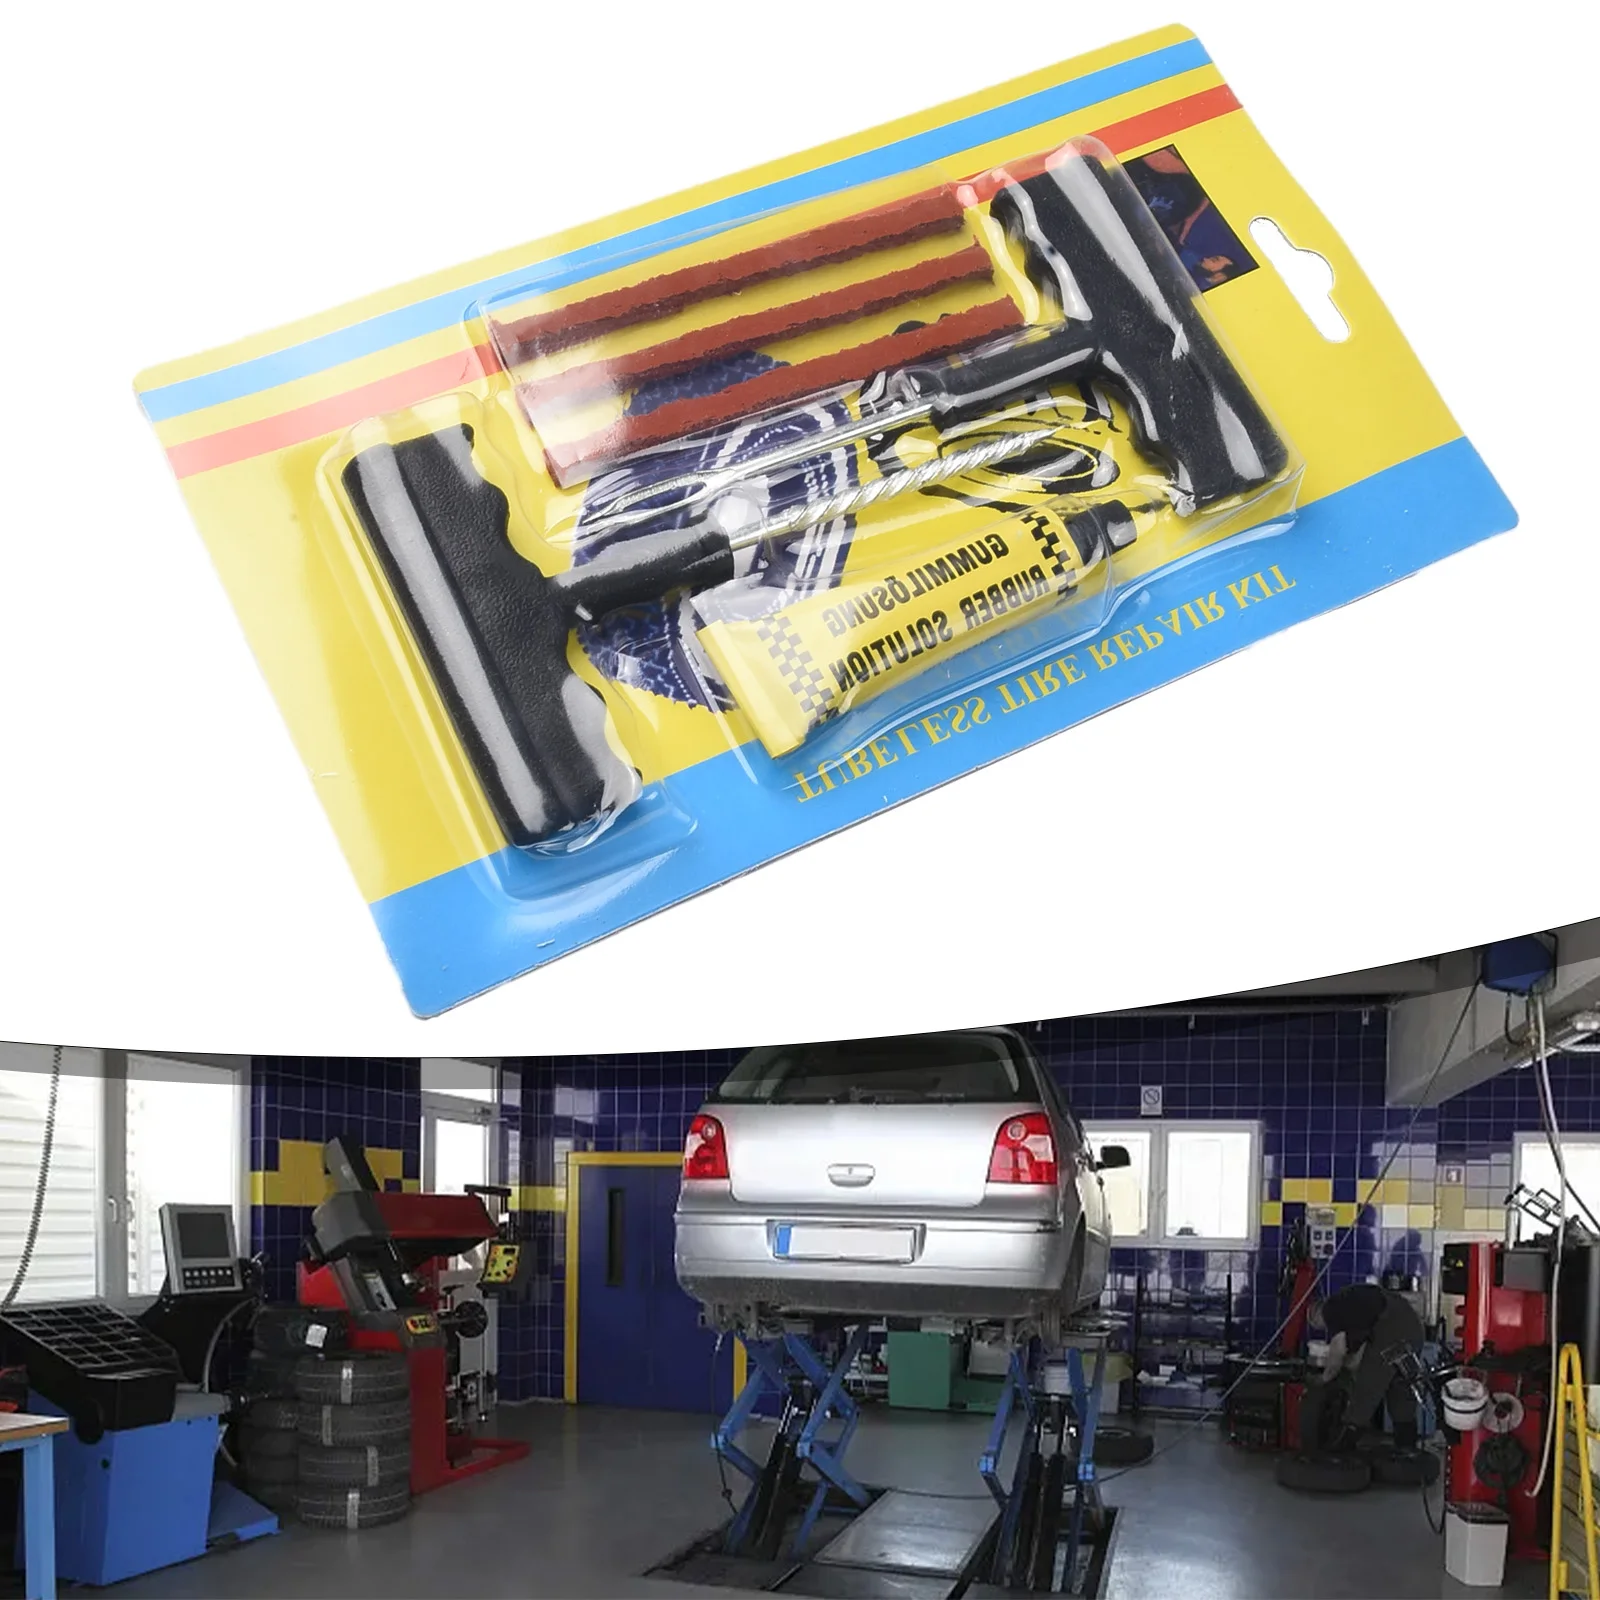 

1set Universal Puncture Repair Kit Car Van Motorcycle Tyre Plug Tubeless Flat-Tire Repair Tool + Filing & Strip Insertion Tool